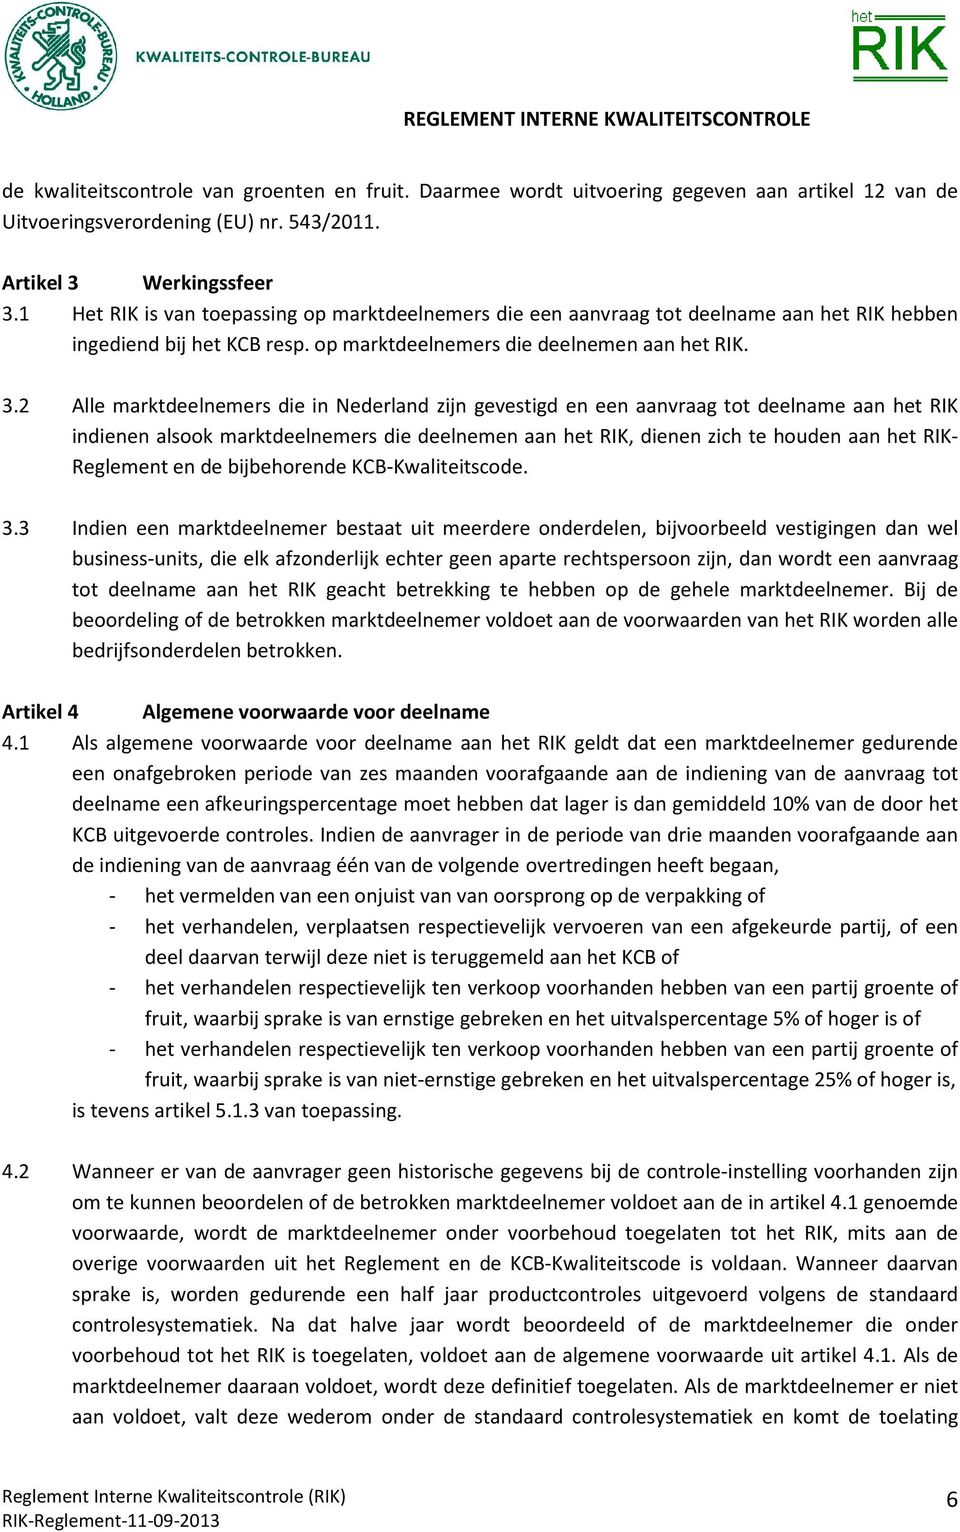 2 Alle marktdeelnemers die in Nederland zijn gevestigd en een aanvraag tot deelname aan het RIK indienen alsook marktdeelnemers die deelnemen aan het RIK, dienen zich te houden aan het RIK- Reglement